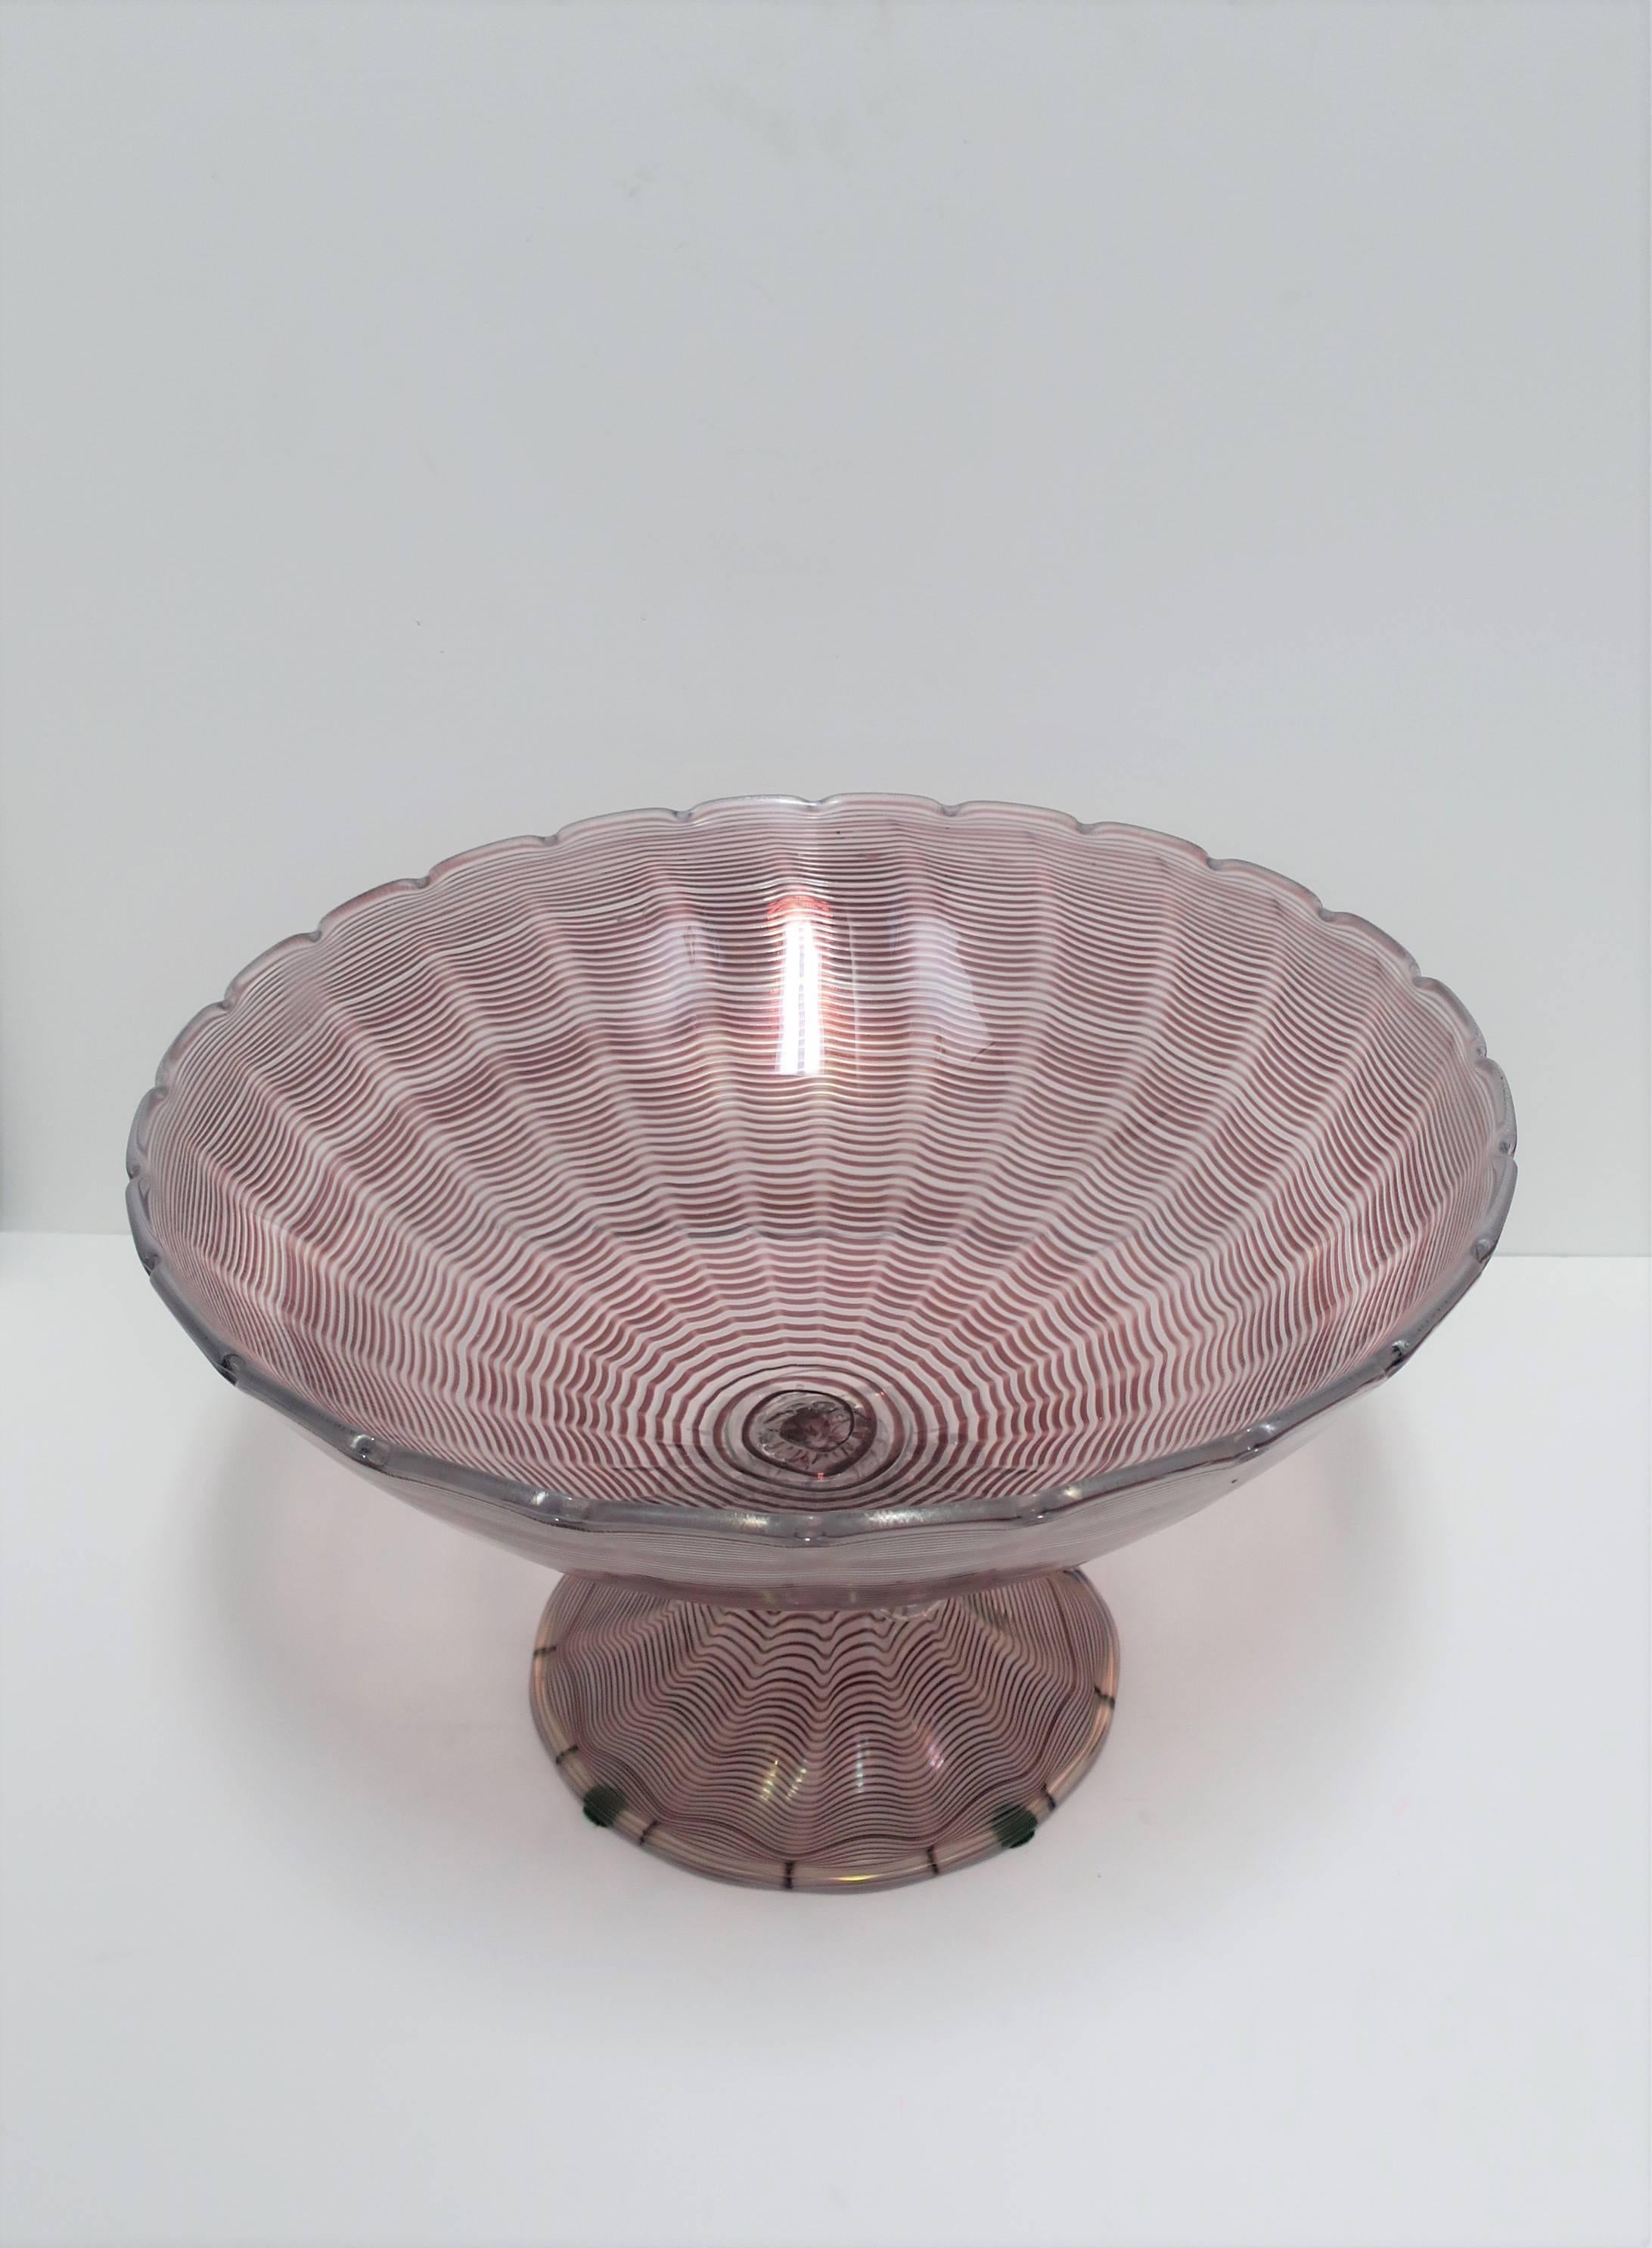 20th Century Italian Murano Art Glass Urn Centerpiece Bowl